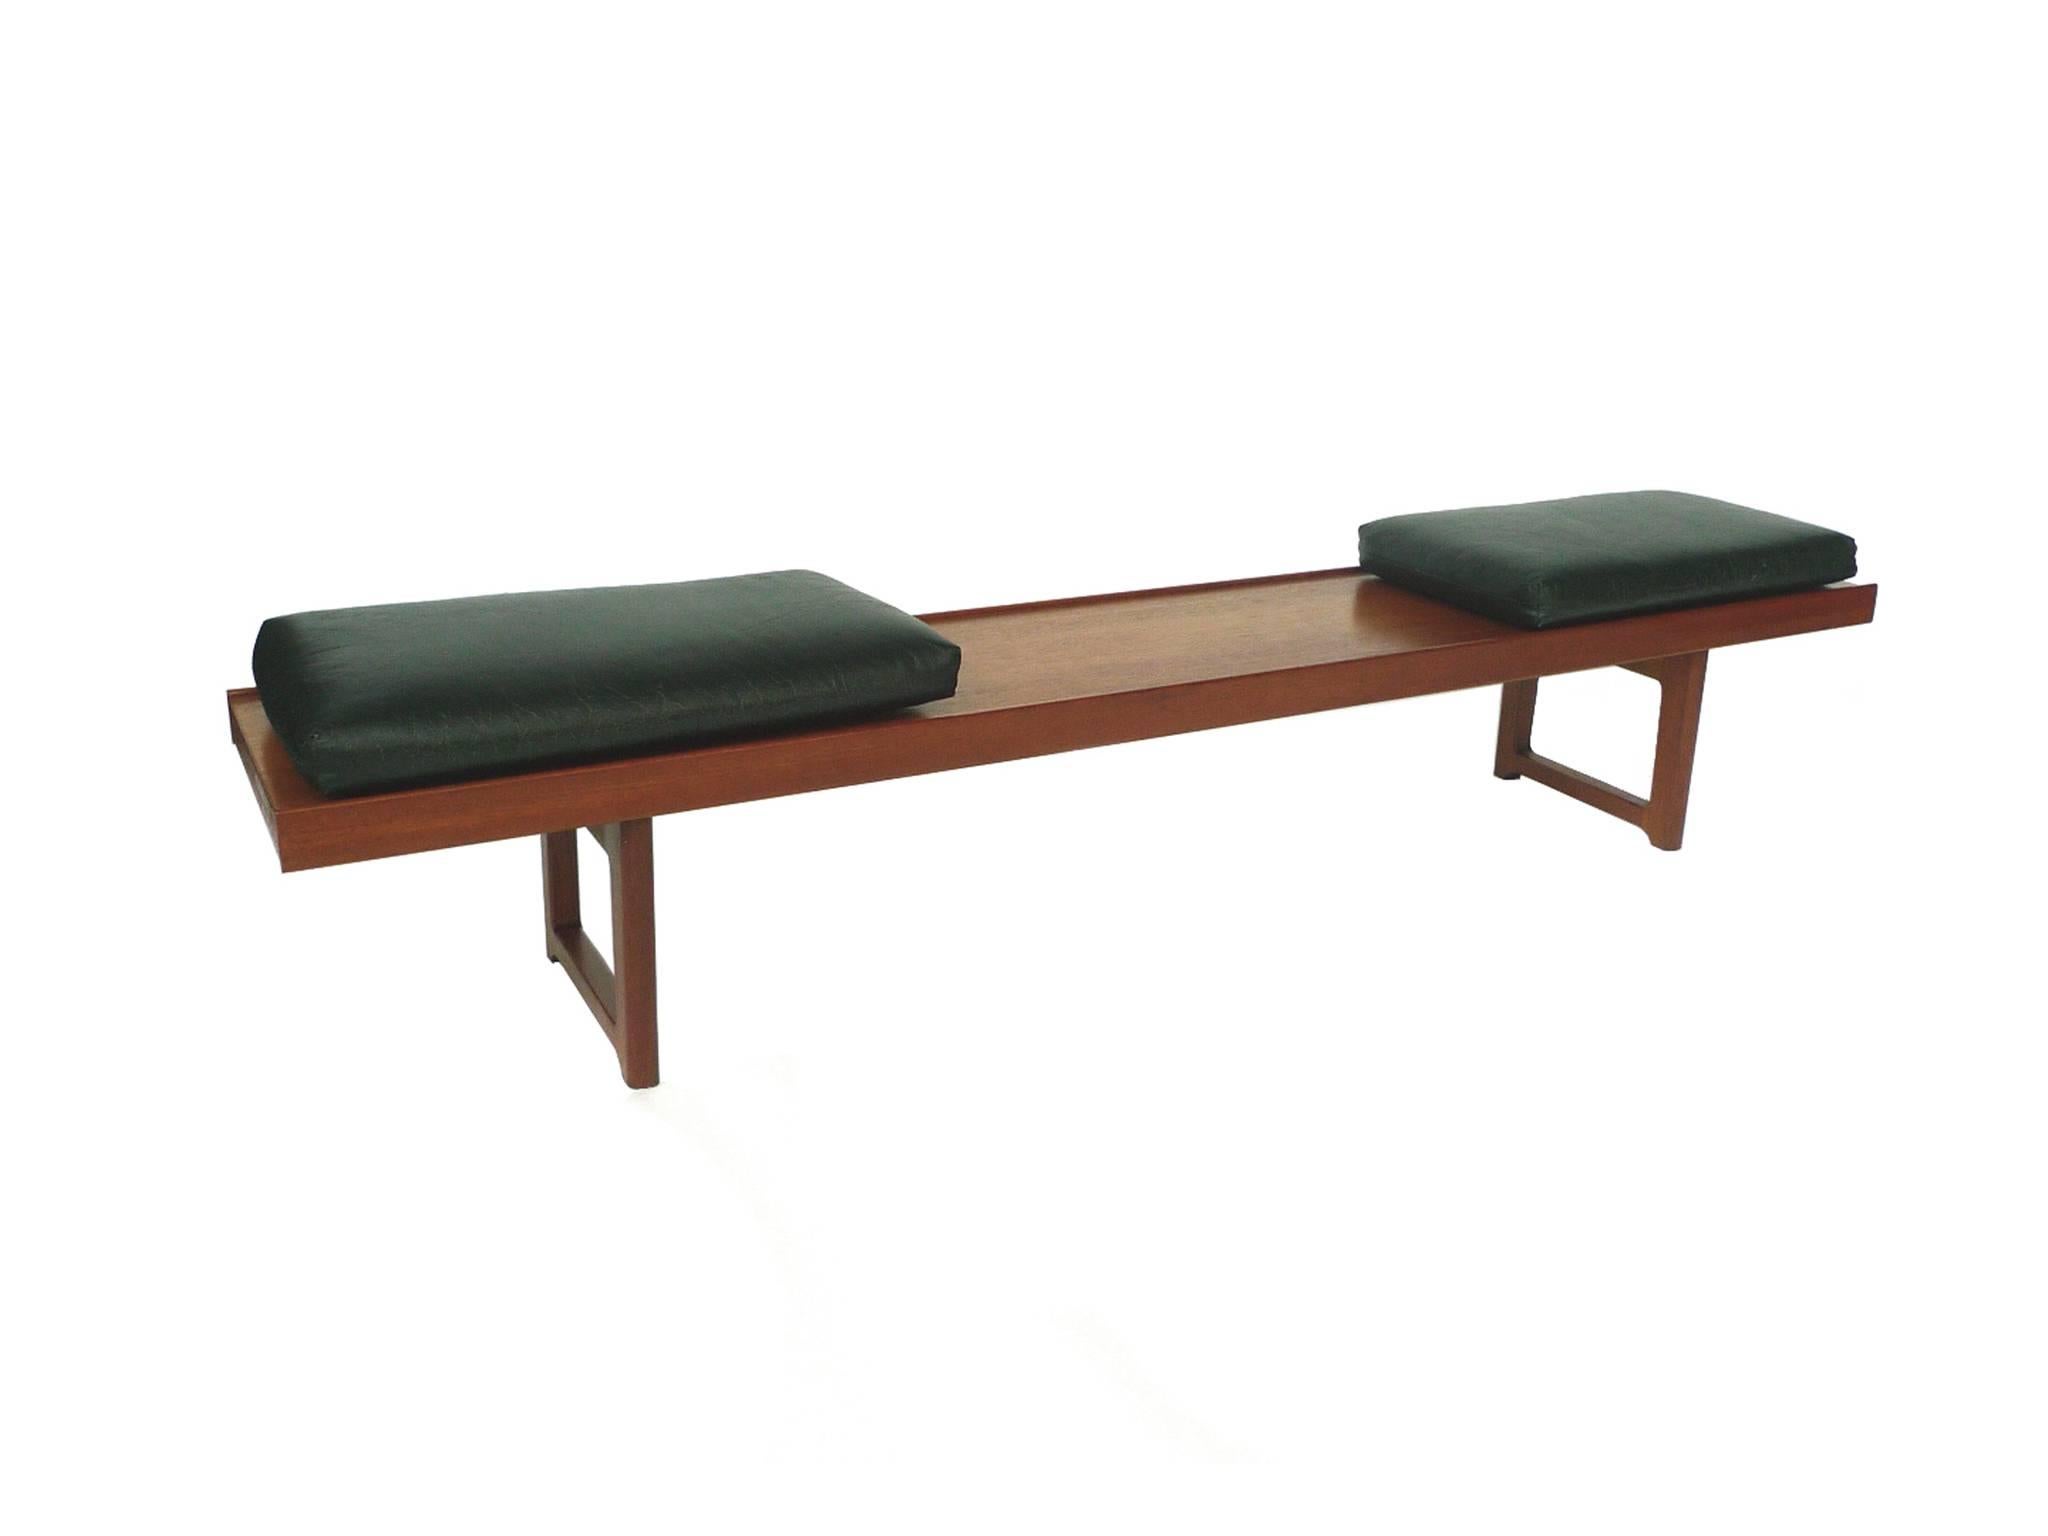 Steel Set of Two Solid Teak Bench-Tables by Torbjørn Afdal for Bruksbo, Norway